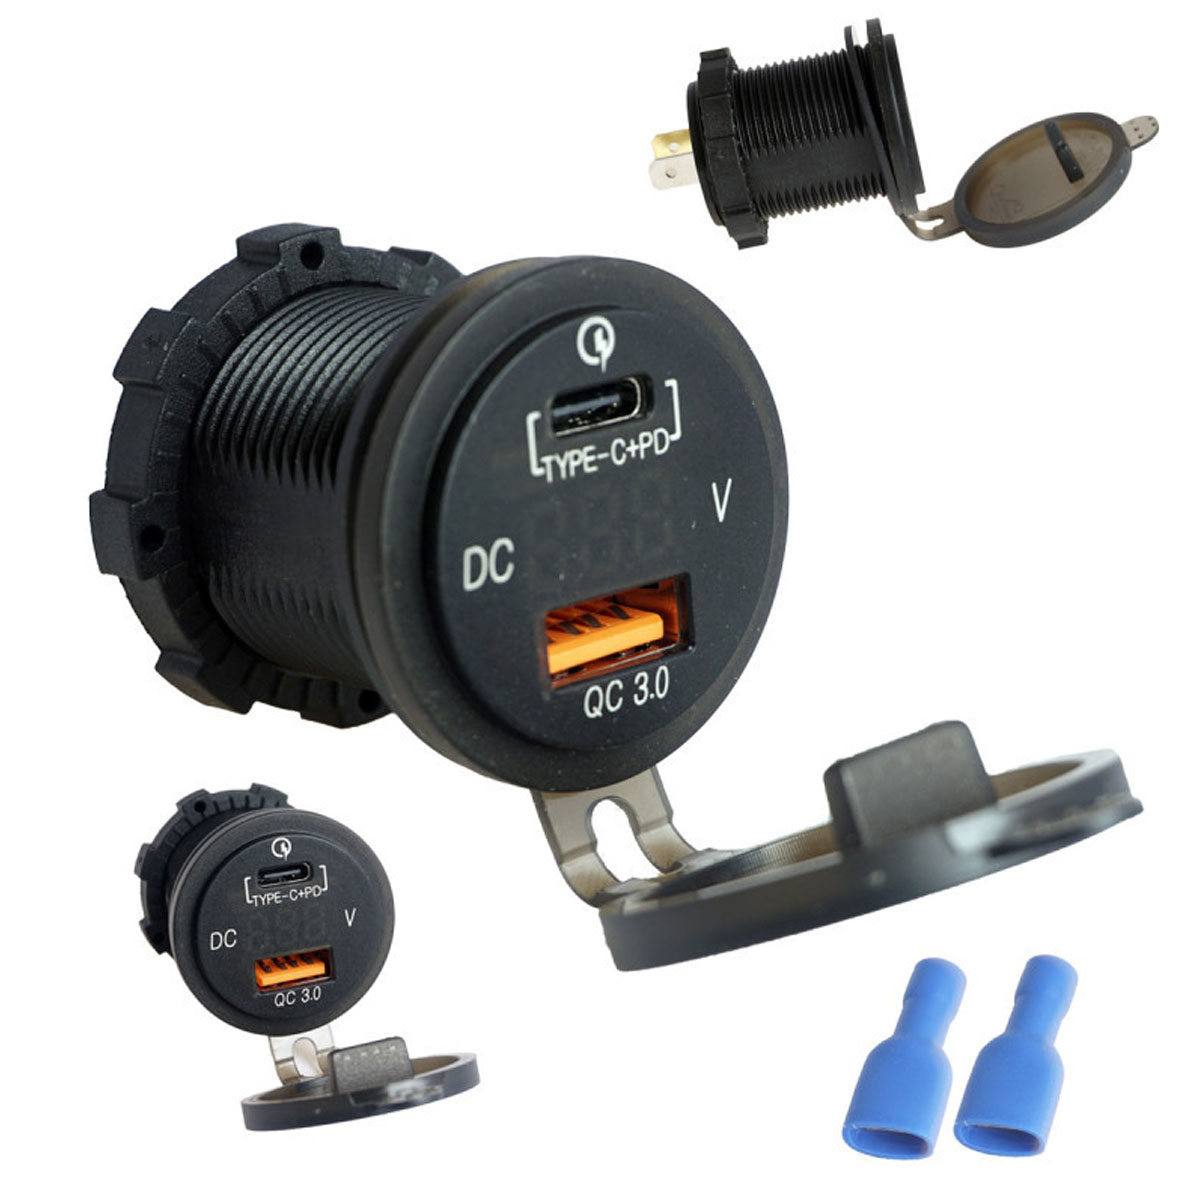 УАЗУ (Универсальное автомобильное зарядное устройство) GH-DS56, врезное в прикуриватель, 1 USB, 1 USB Type C, QC3.0, цвет черный